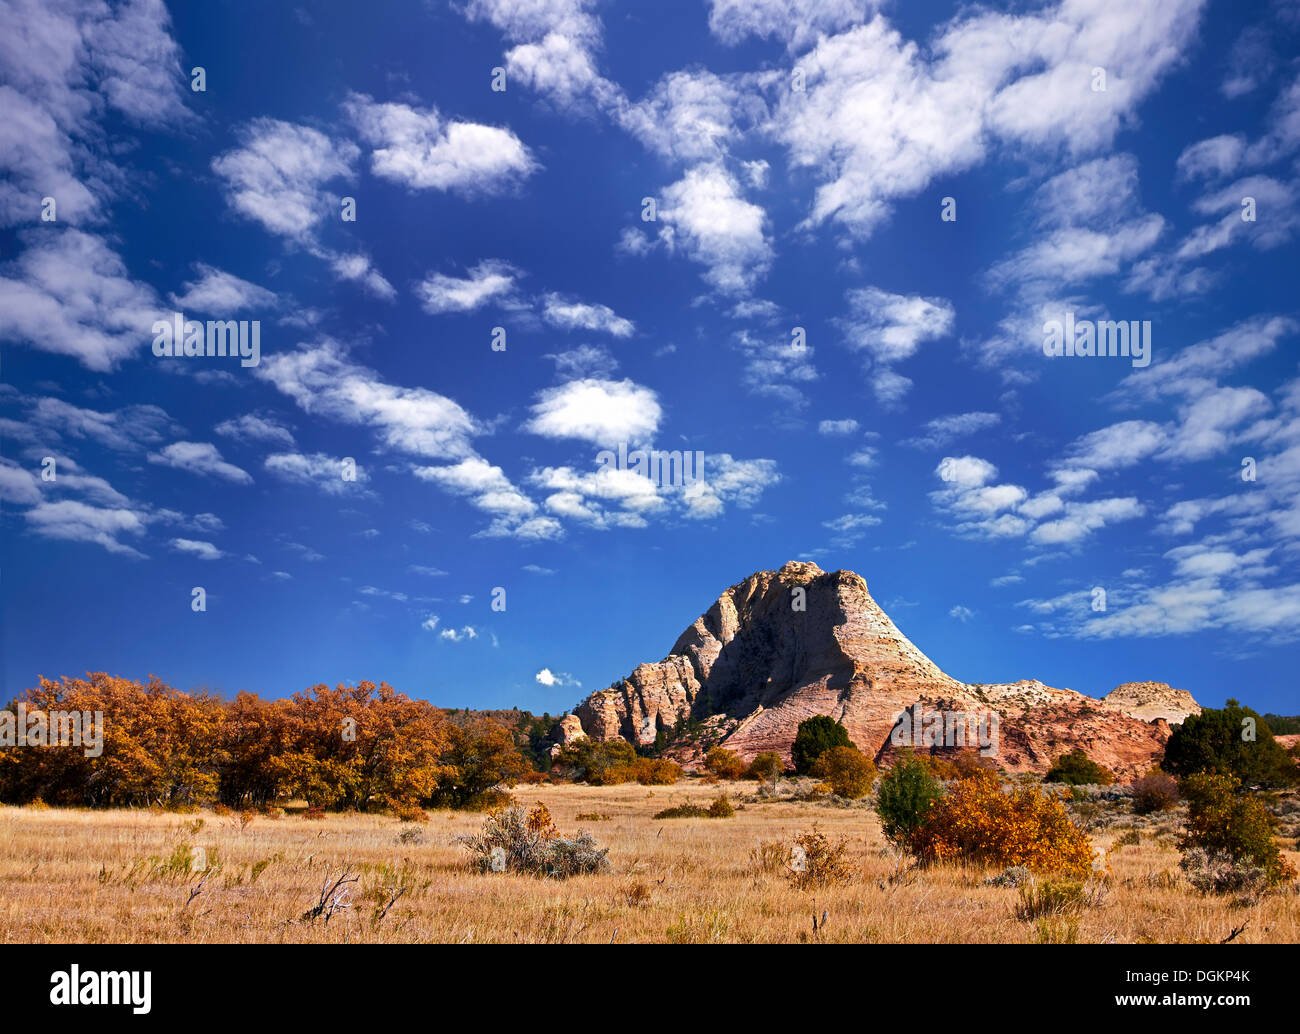 Le but de nature sauvage dans le sud de l'Utah au cours de l'automne. Banque D'Images